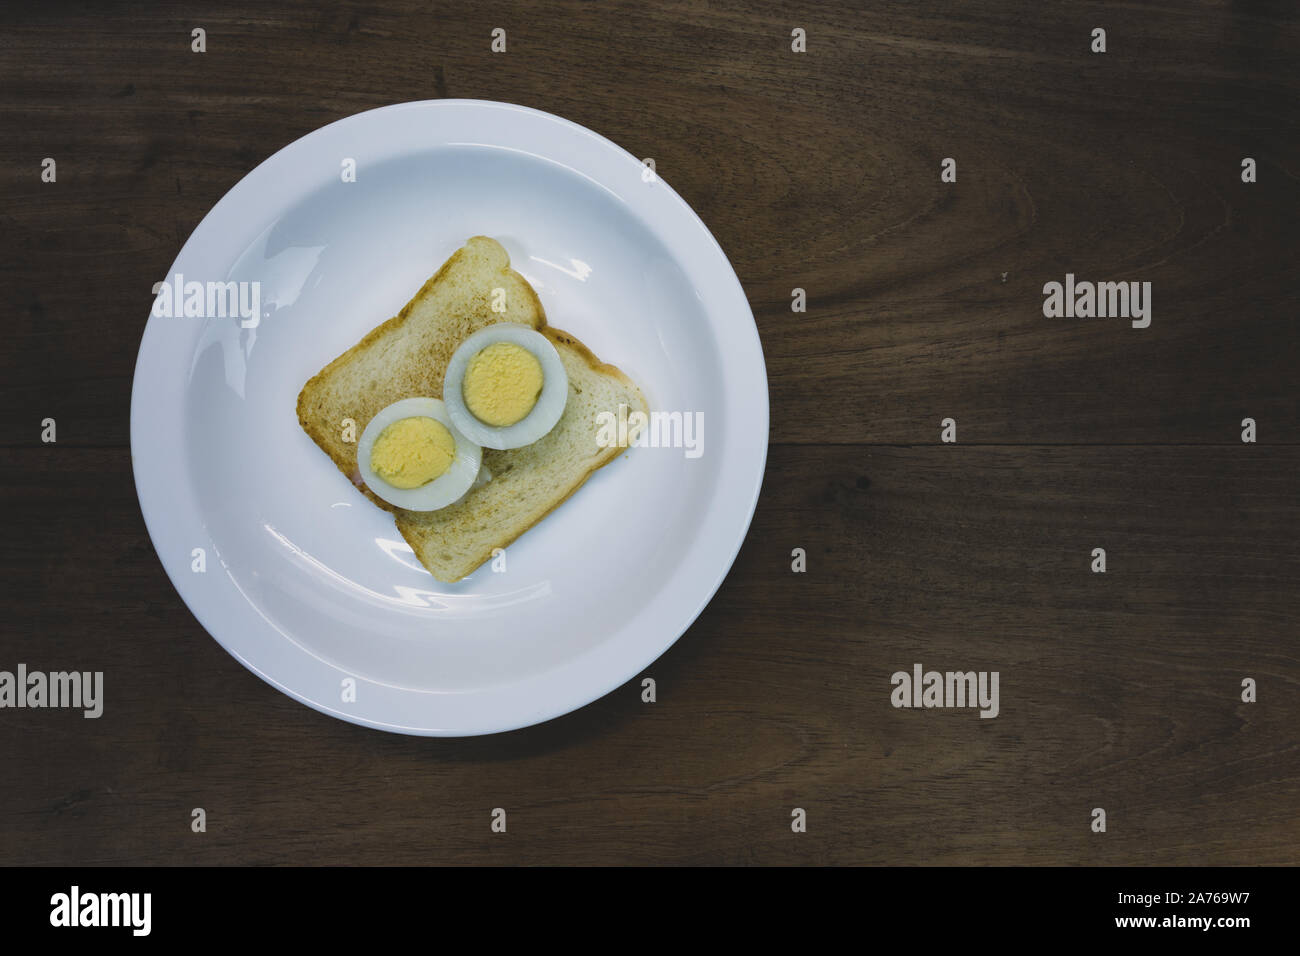 Die Hälfte geschnitten hart gekochte Ei auf getoastetes Sandwich Brot, bereit zu essen, in weiße Platte, hölzernen Tisch Hintergrund. Vintage Farben Stockfoto